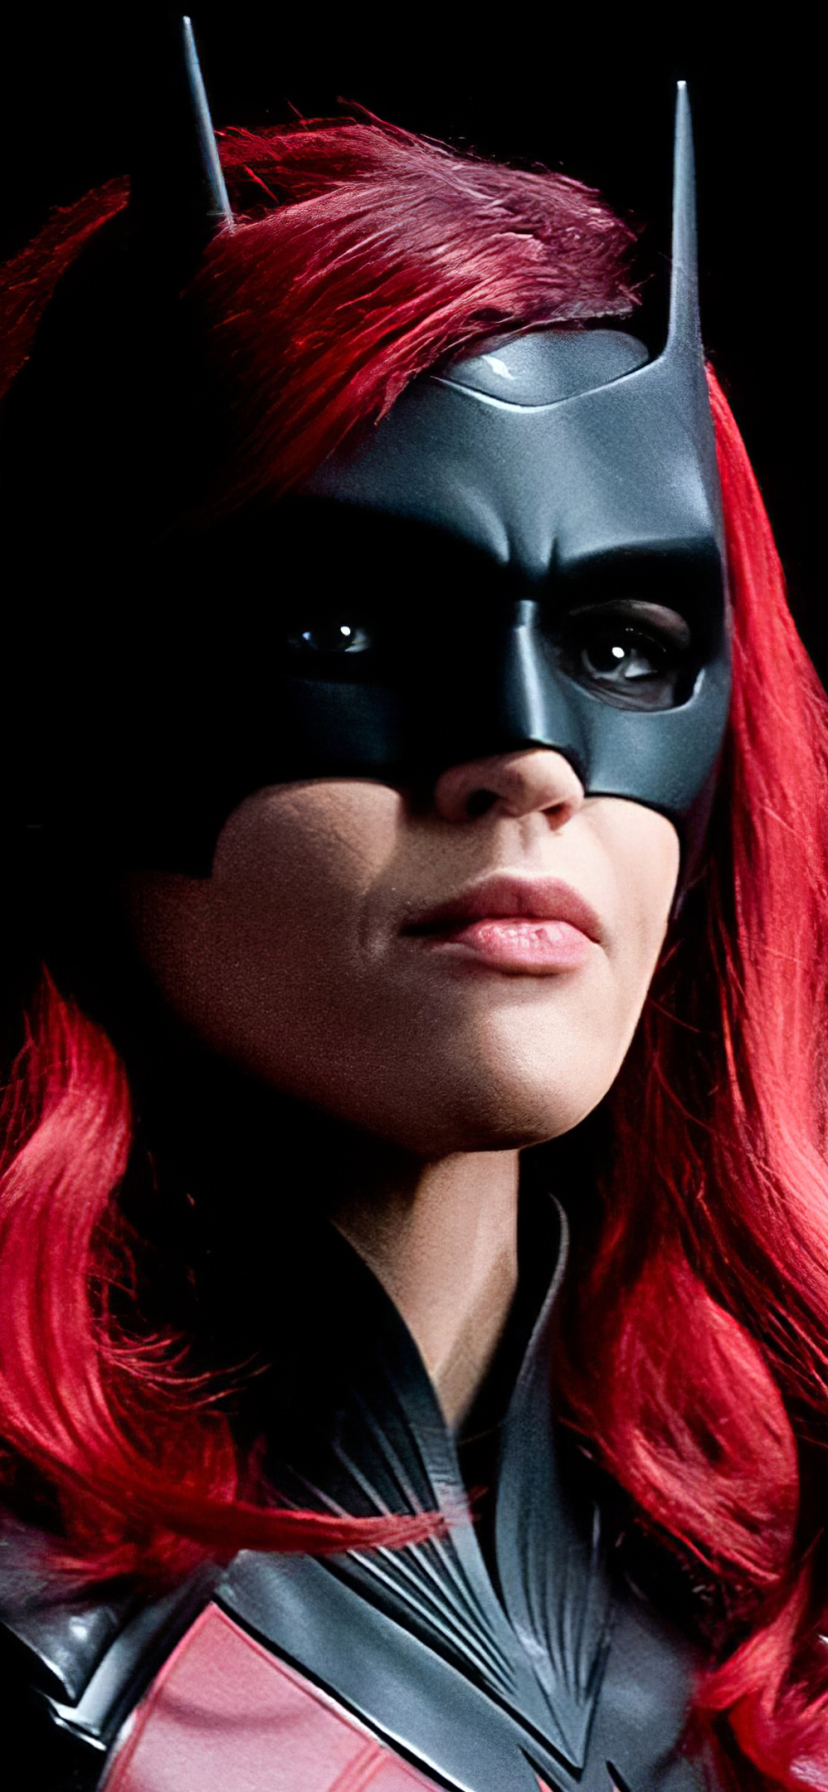 Descarga gratuita de fondo de pantalla para móvil de Series De Televisión, Batwoman, Kate Kane, Rubí Rosa.